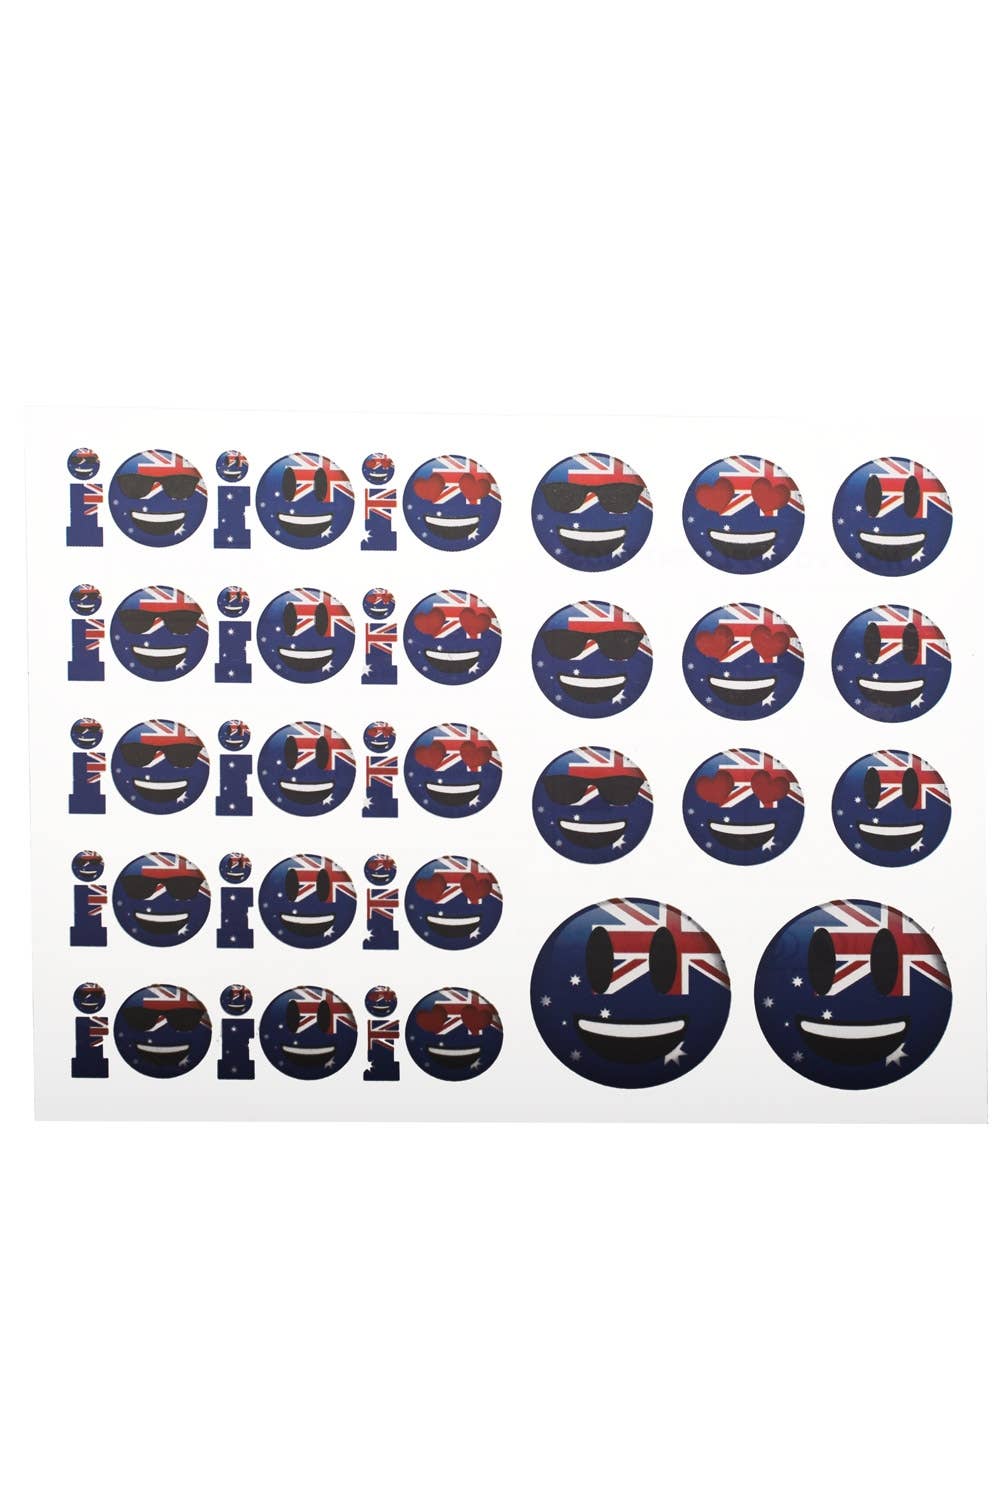 Aussie Flag Oi Oi Oi Australia Day Temporary Fake Tattoos